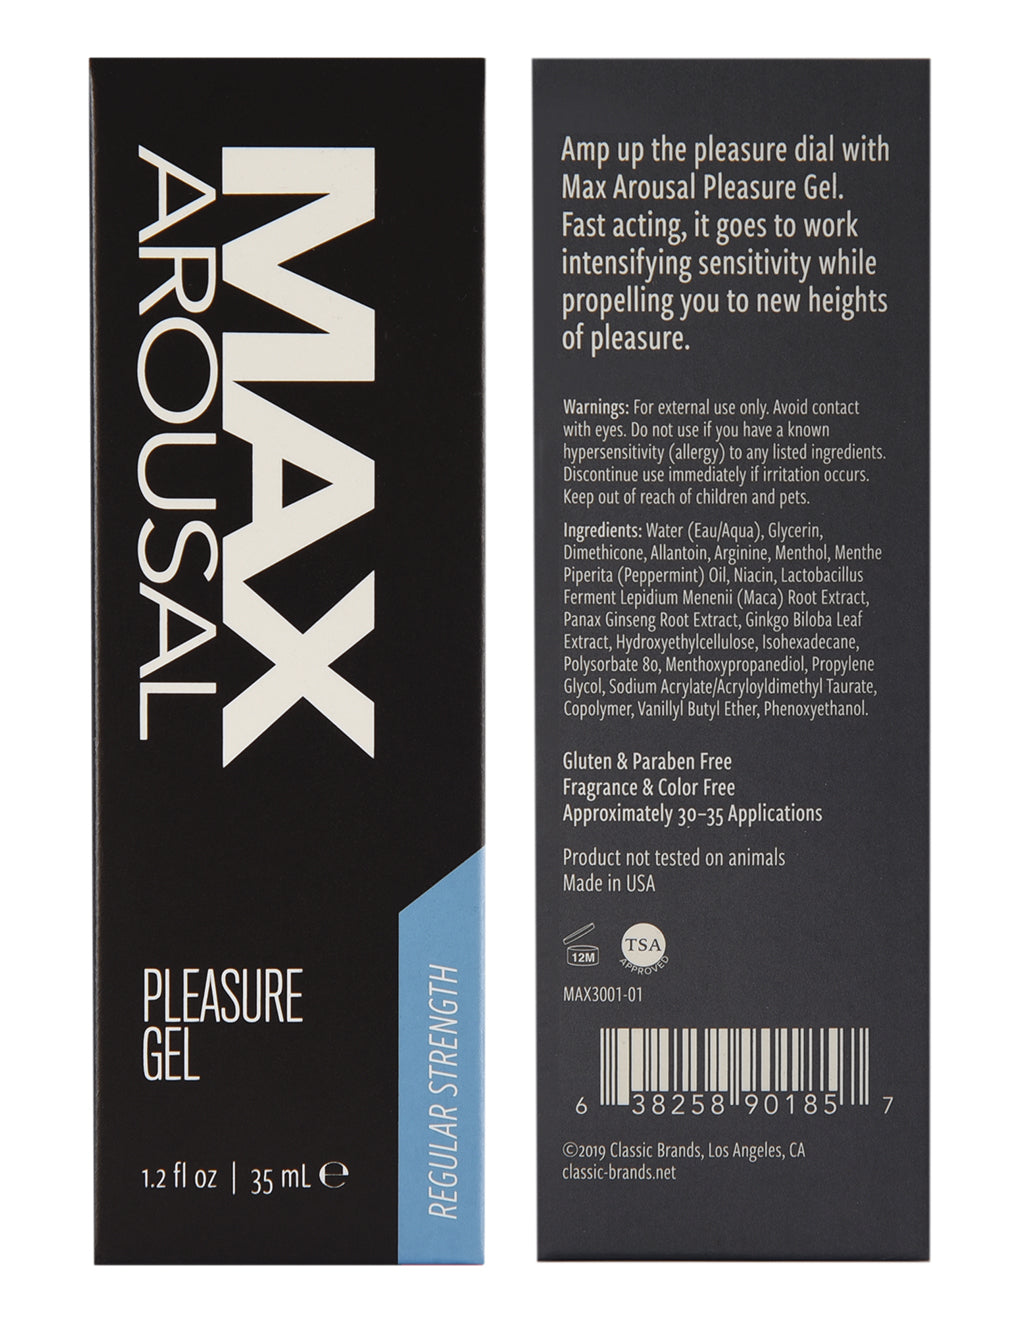 Max Arousal Pleasure Gel Regular Strength- Box details